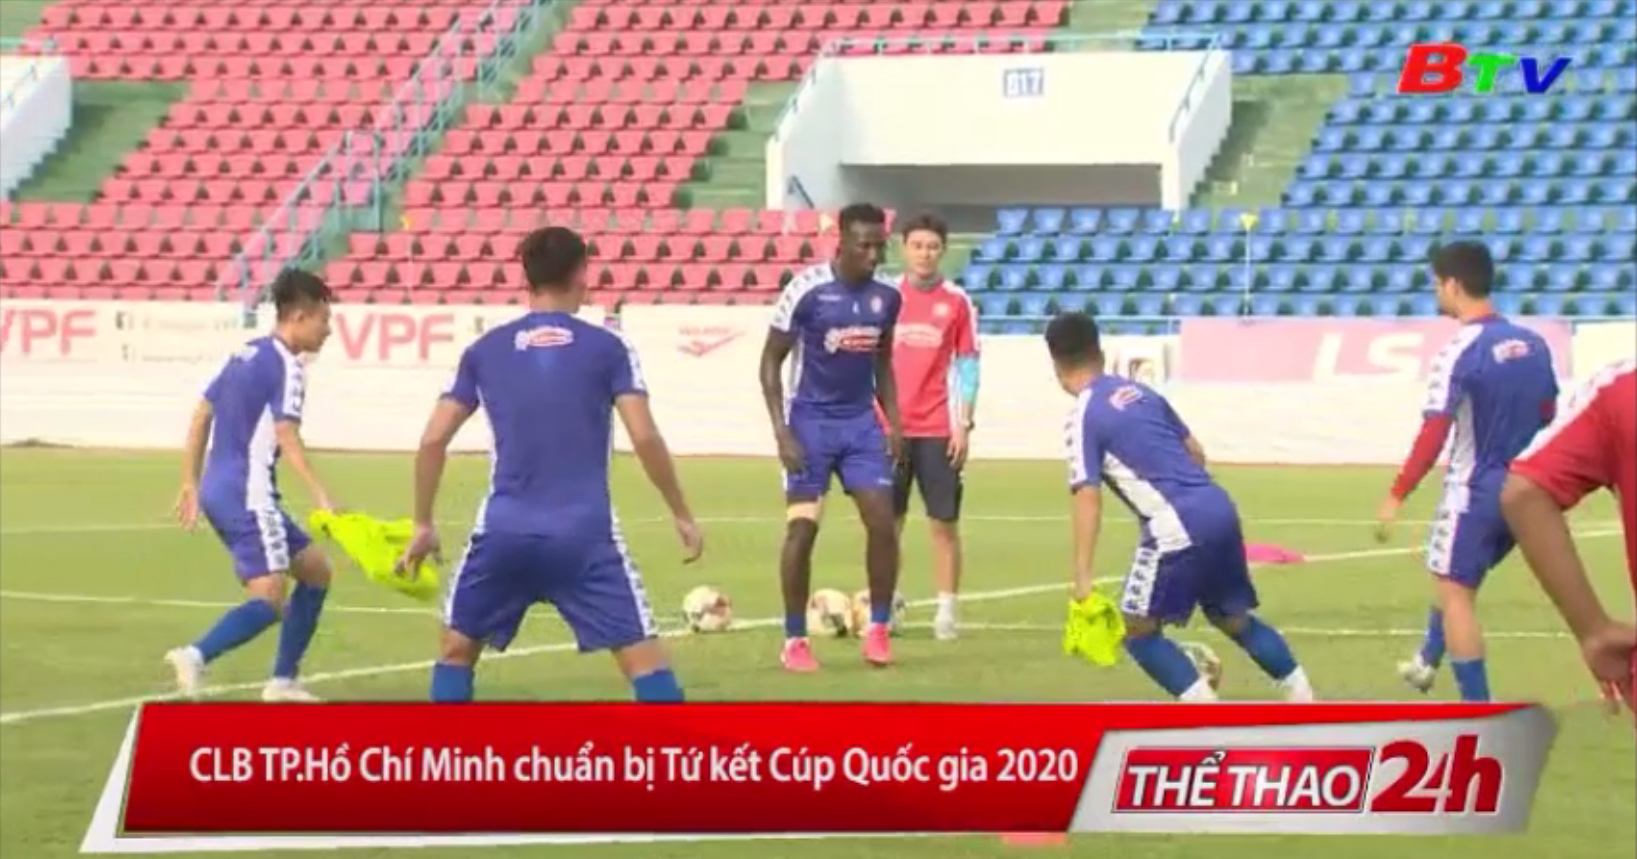 CLB TP. Hồ Chí Minh chuẩn bị Tứ kết Cúp Quốc gia 2020